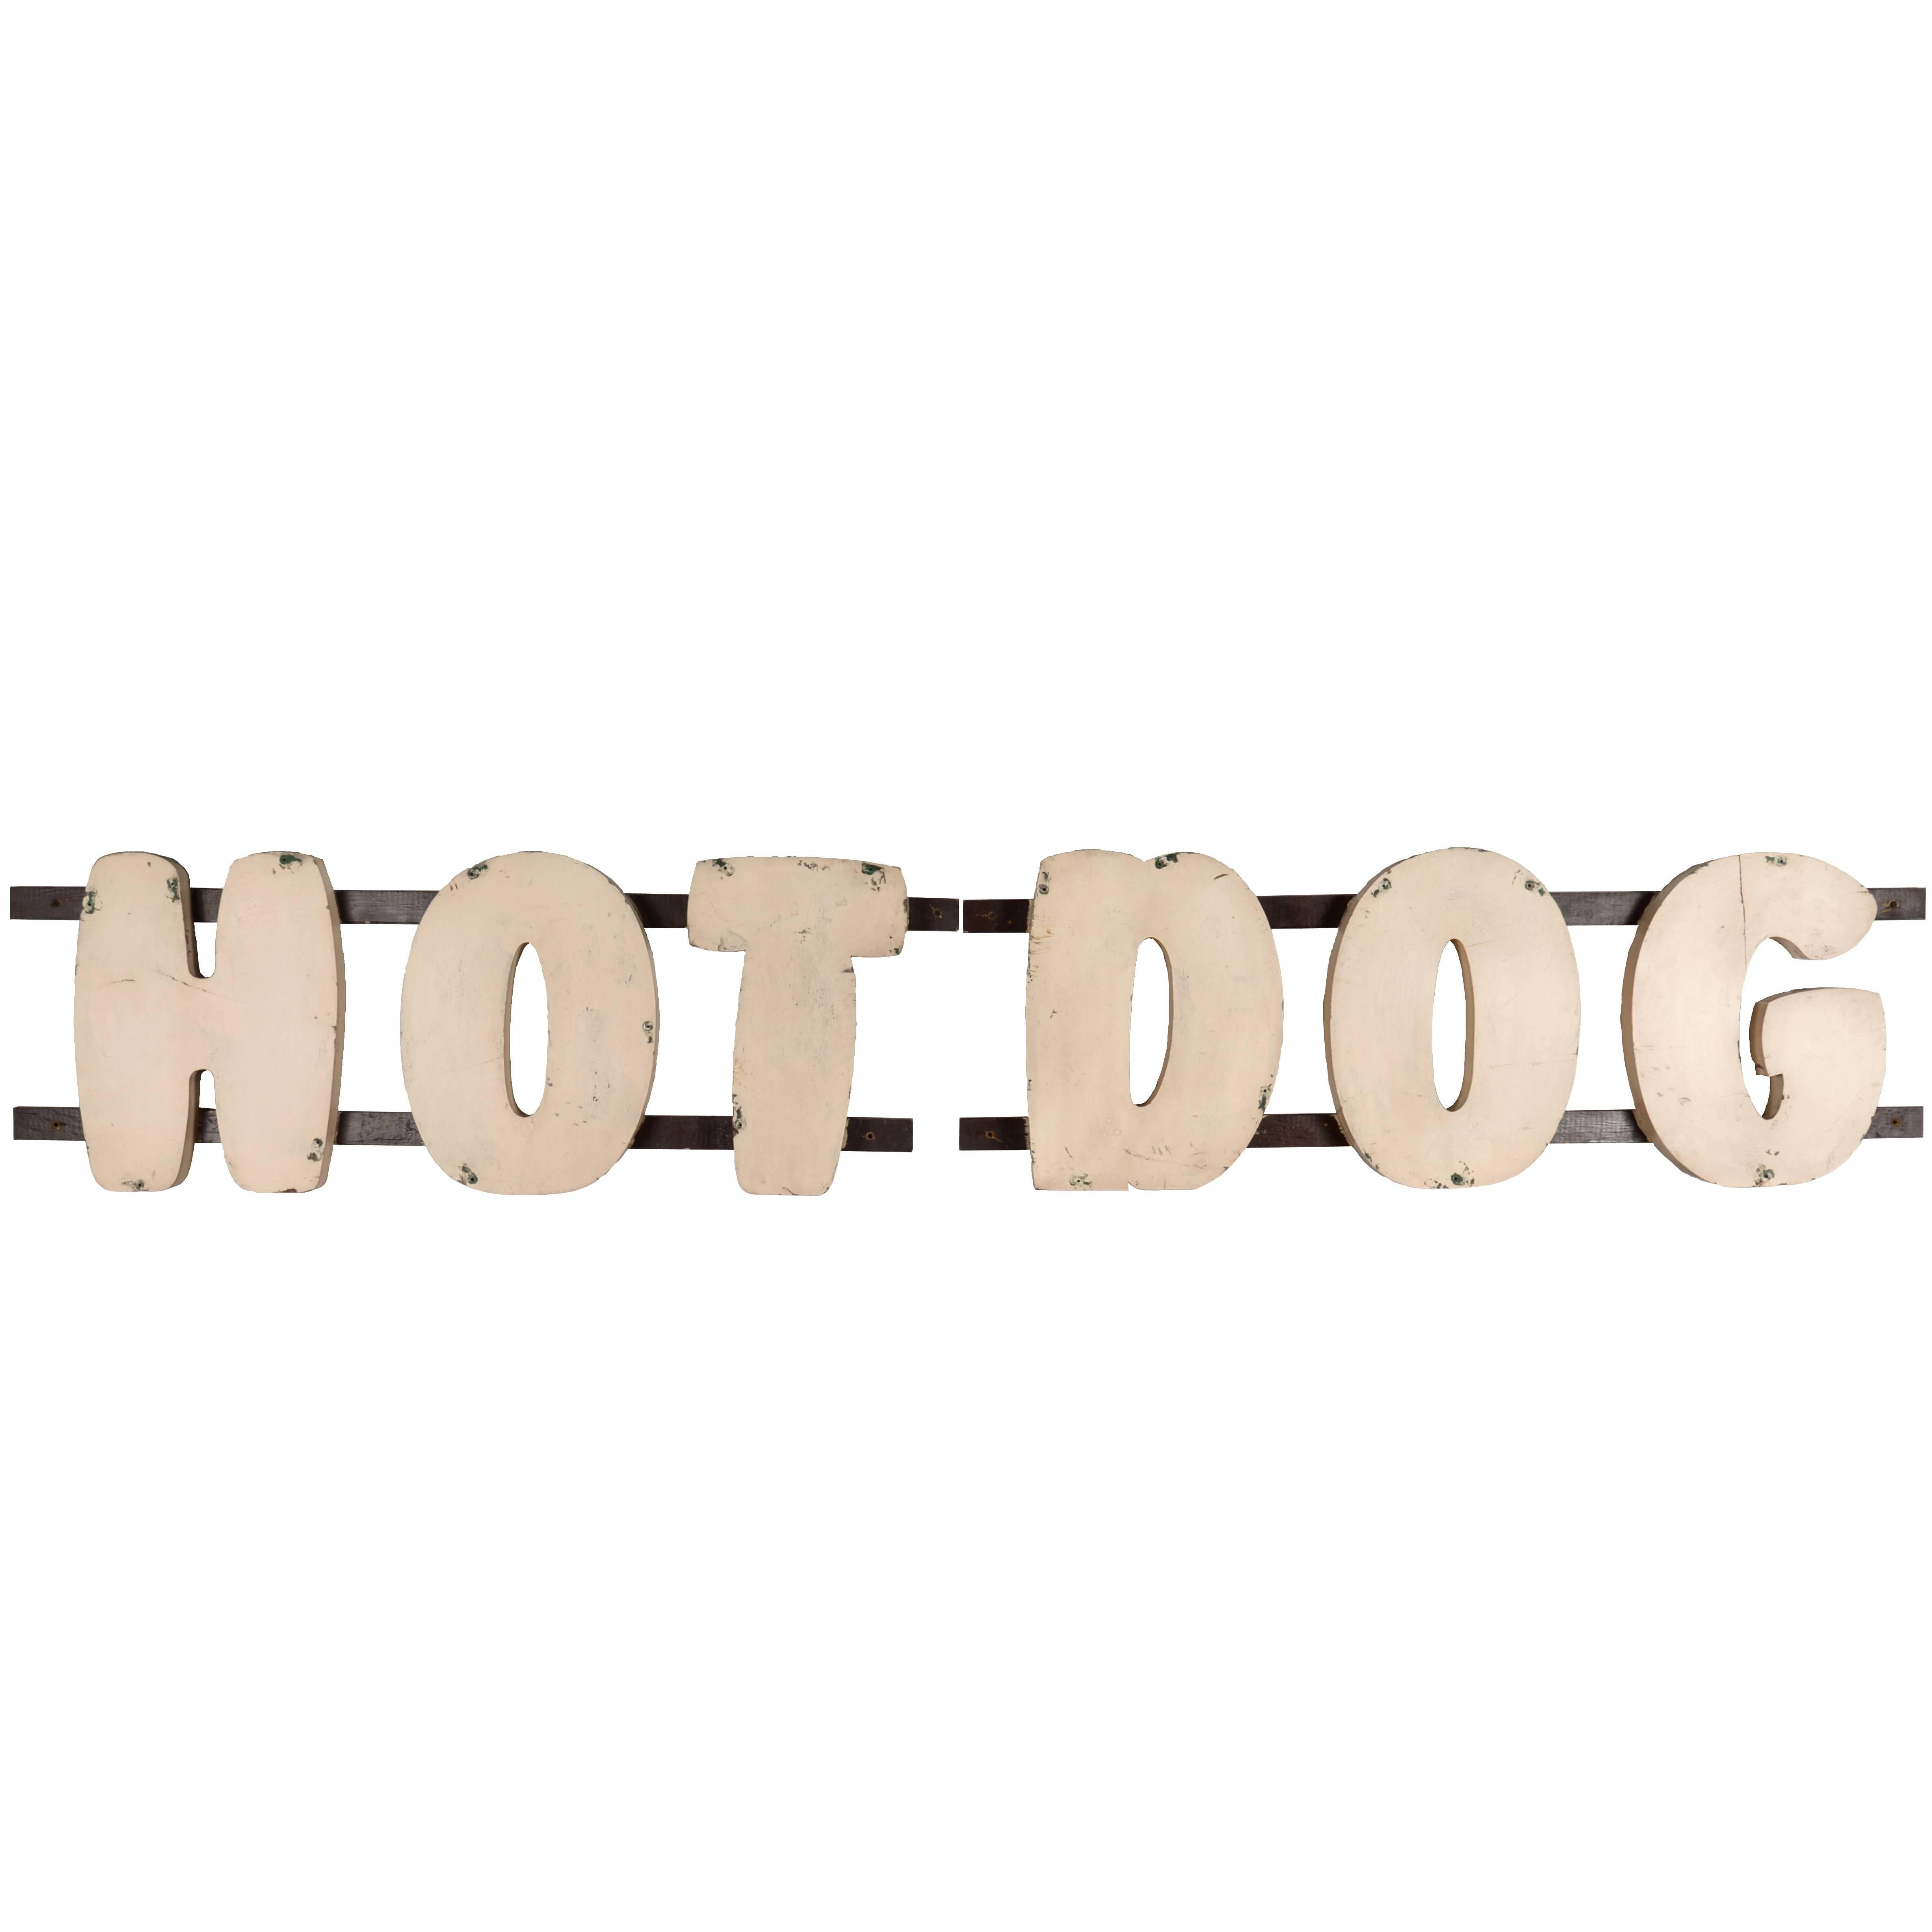 Large Wooden Hot Dog Sign